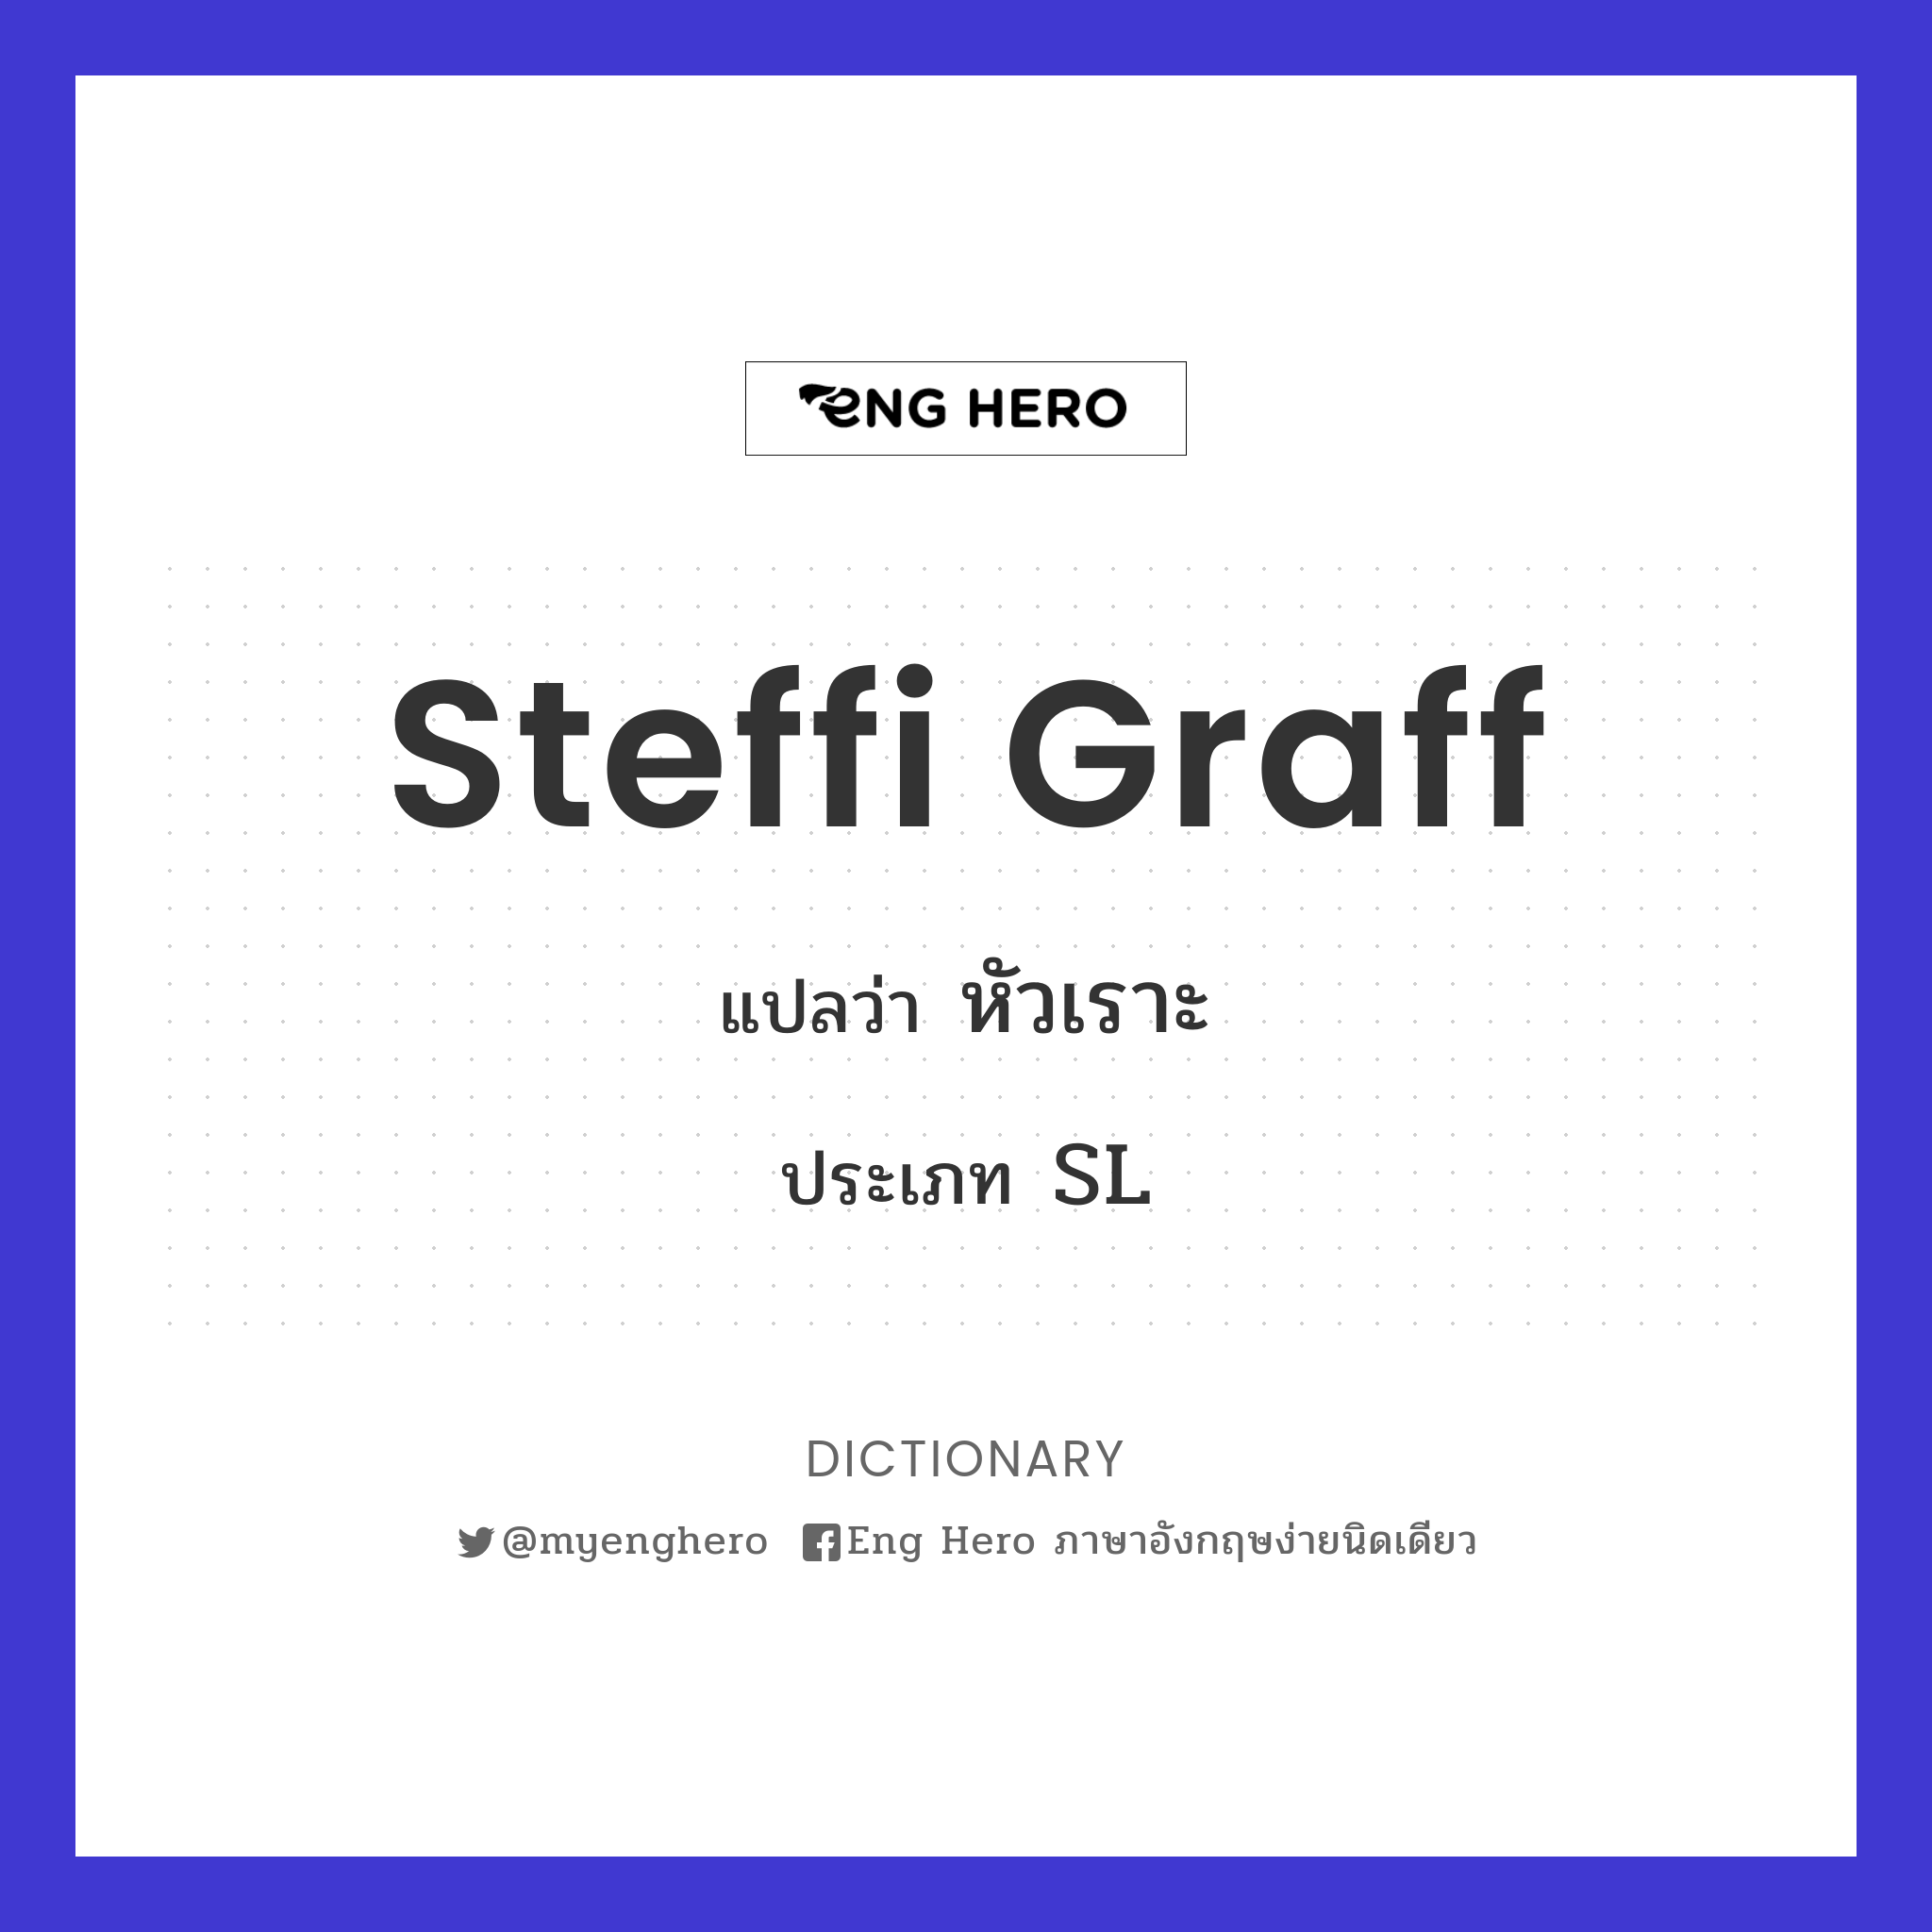 Steffi Graff